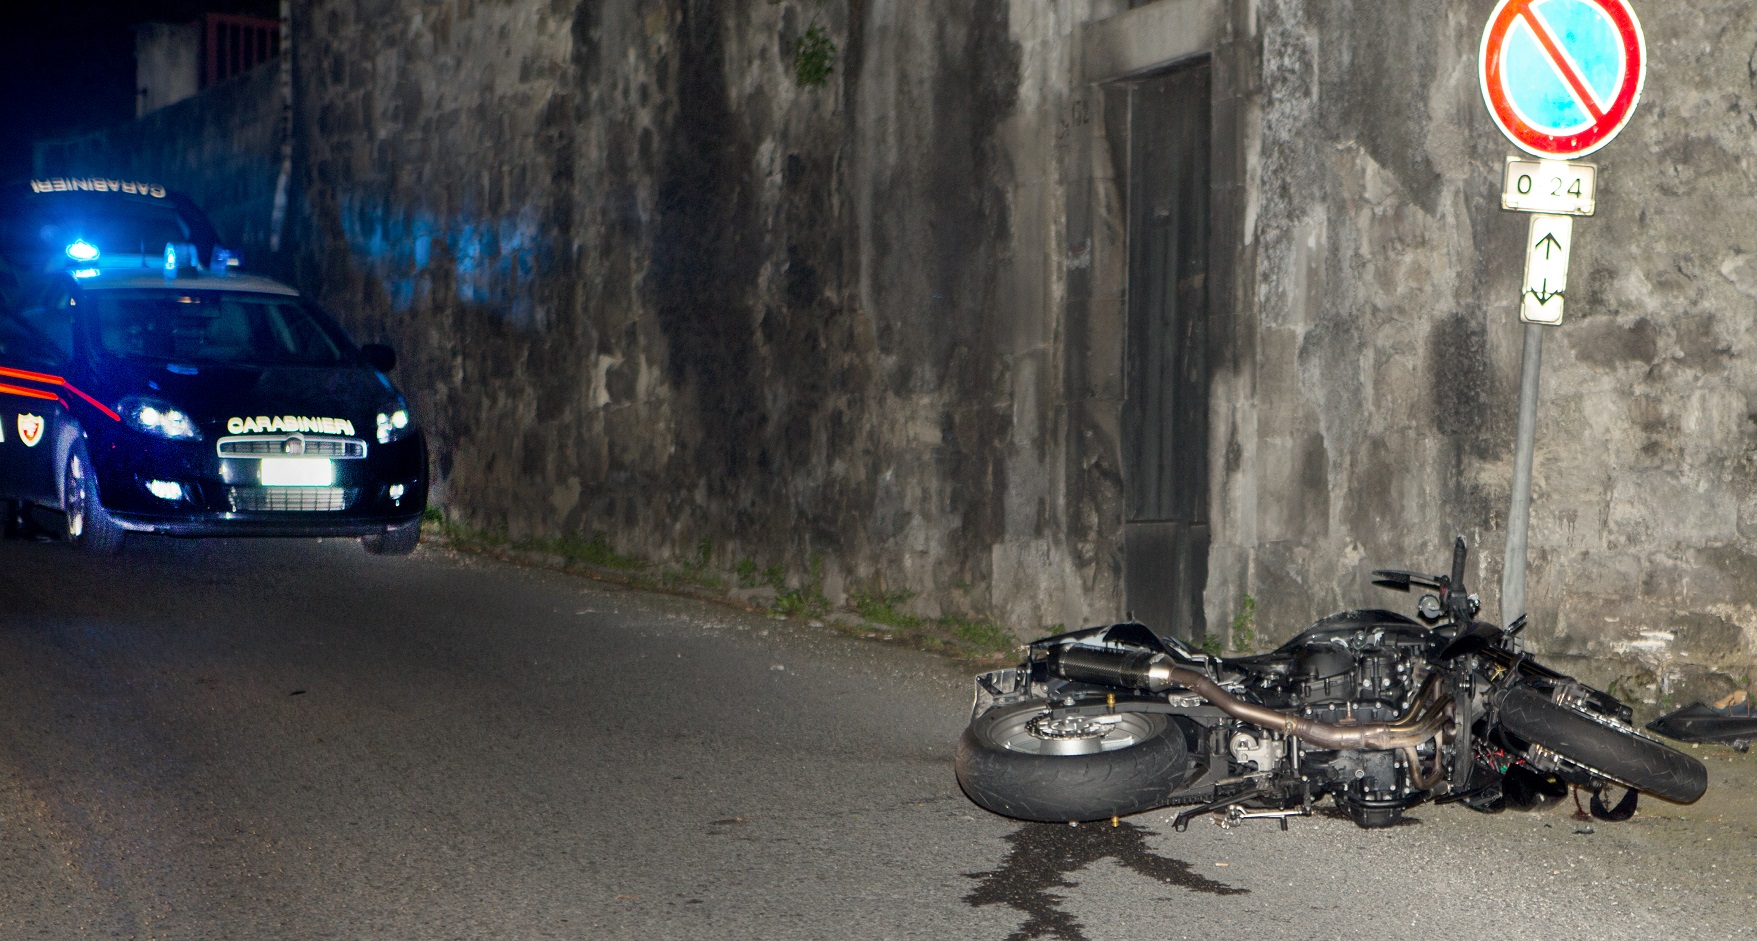  Modica: perde il controllo della moto e sbatte su un muro, morto 25enne